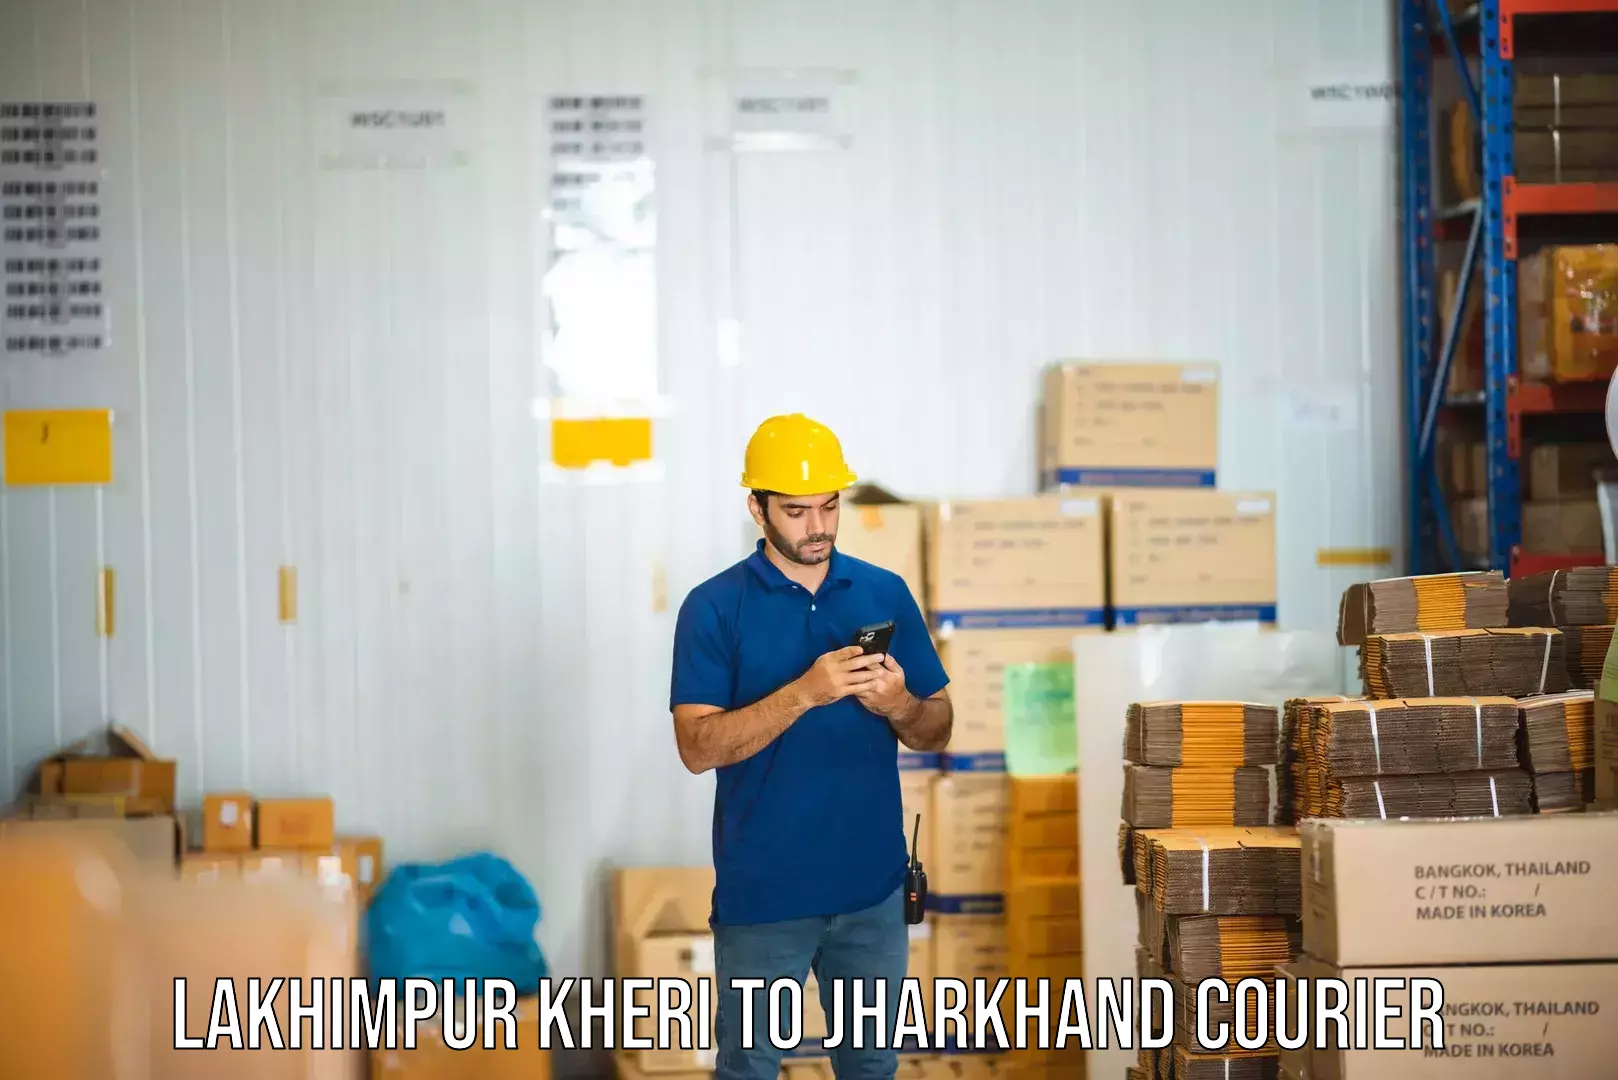 Premium courier services Lakhimpur Kheri to Jharkhand